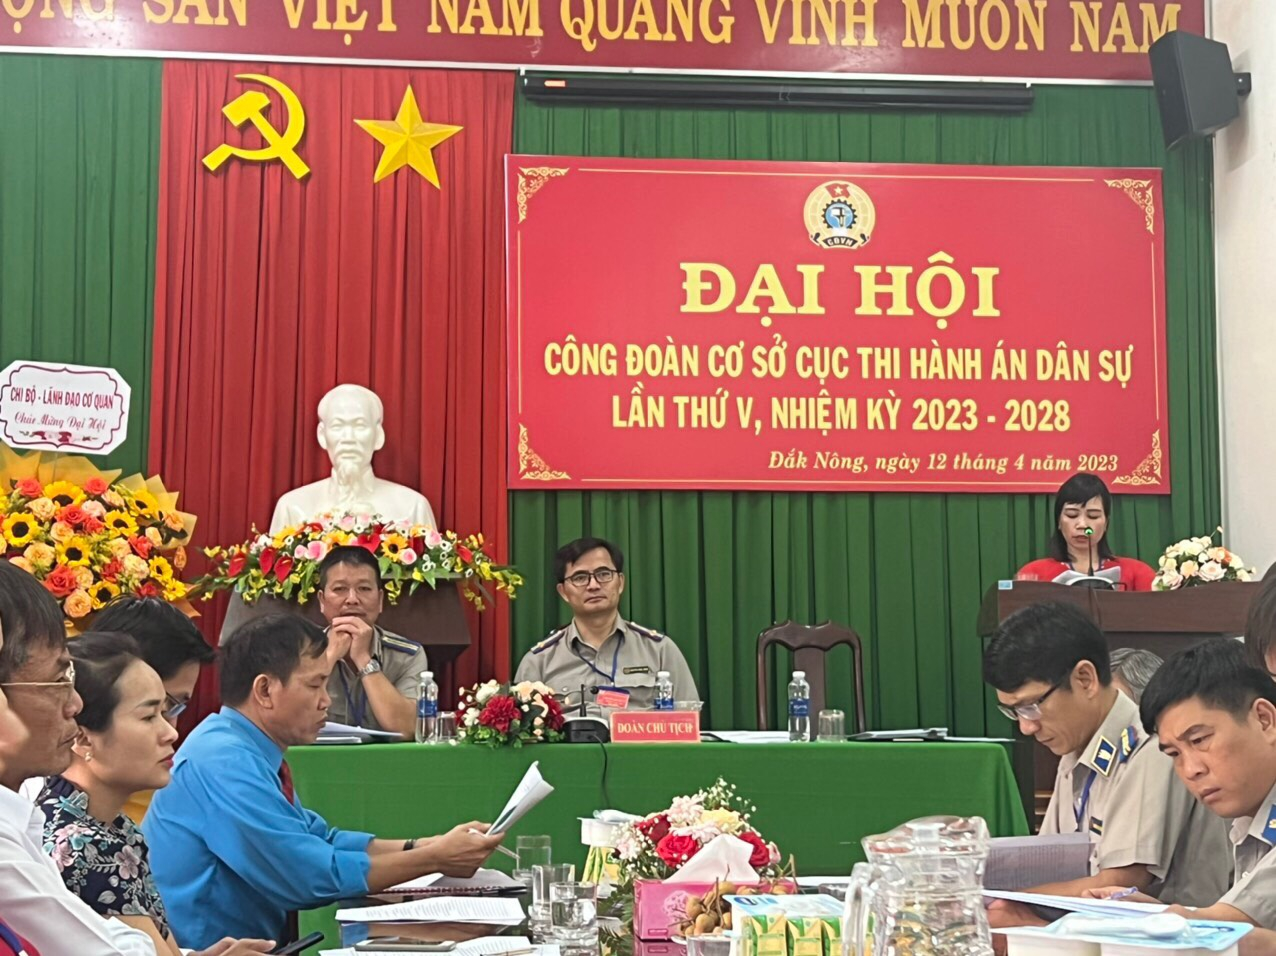 Đại hội Công đoàn cơ sở Cục Thi hành án dân sự, Viện Kiểm sát nhân dân tỉnh Đắk Nông, lần thứ VI, nhiệm kỳ 2023 - 2028